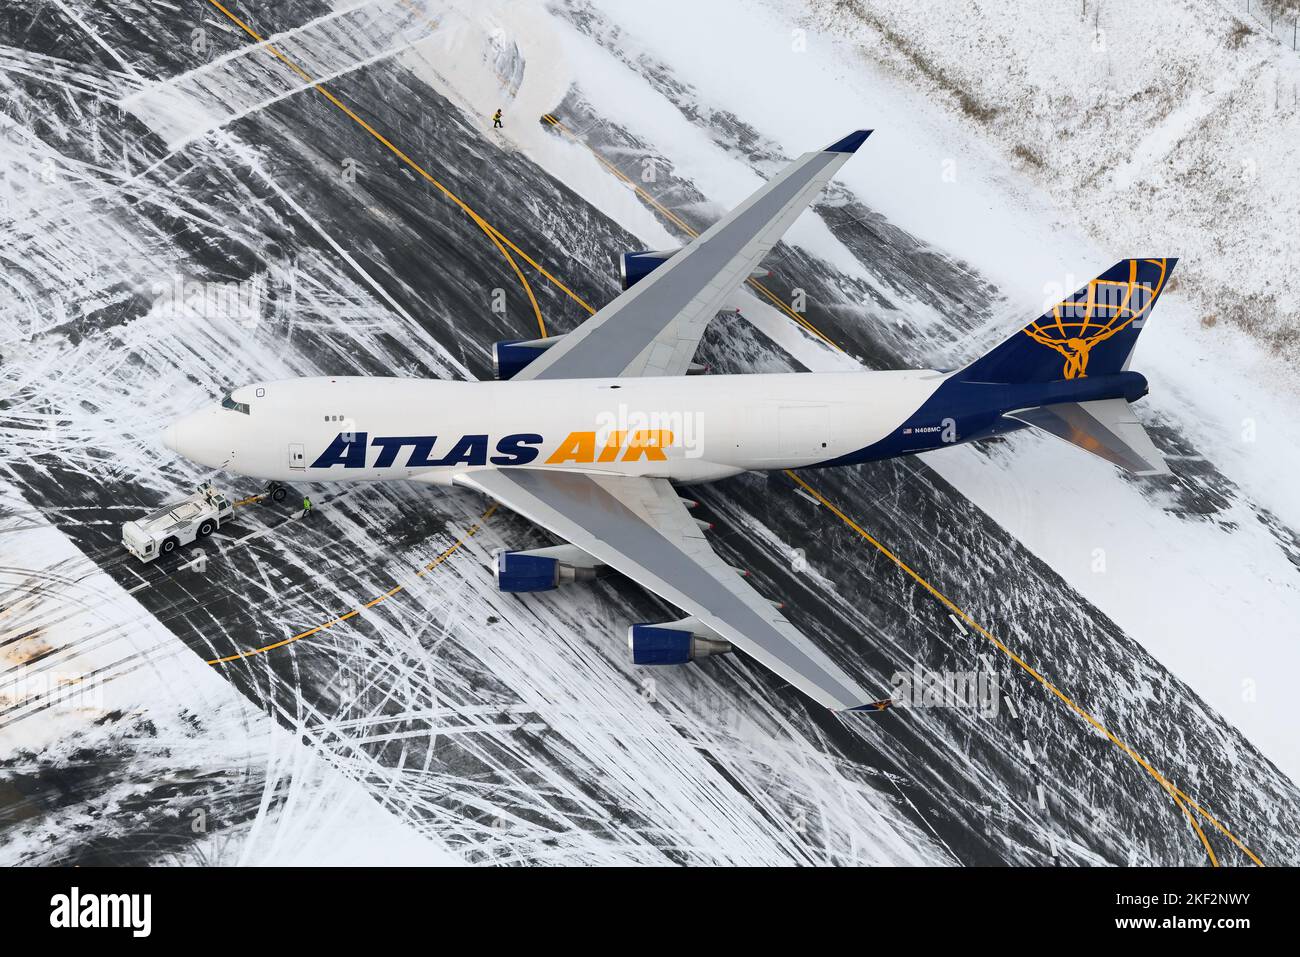 Atlas Air Cargo Boeing 747 cargo à l'aéroport d'Anchorage après la neige. 747-400F avion cargo d'AtlasAir. Banque D'Images